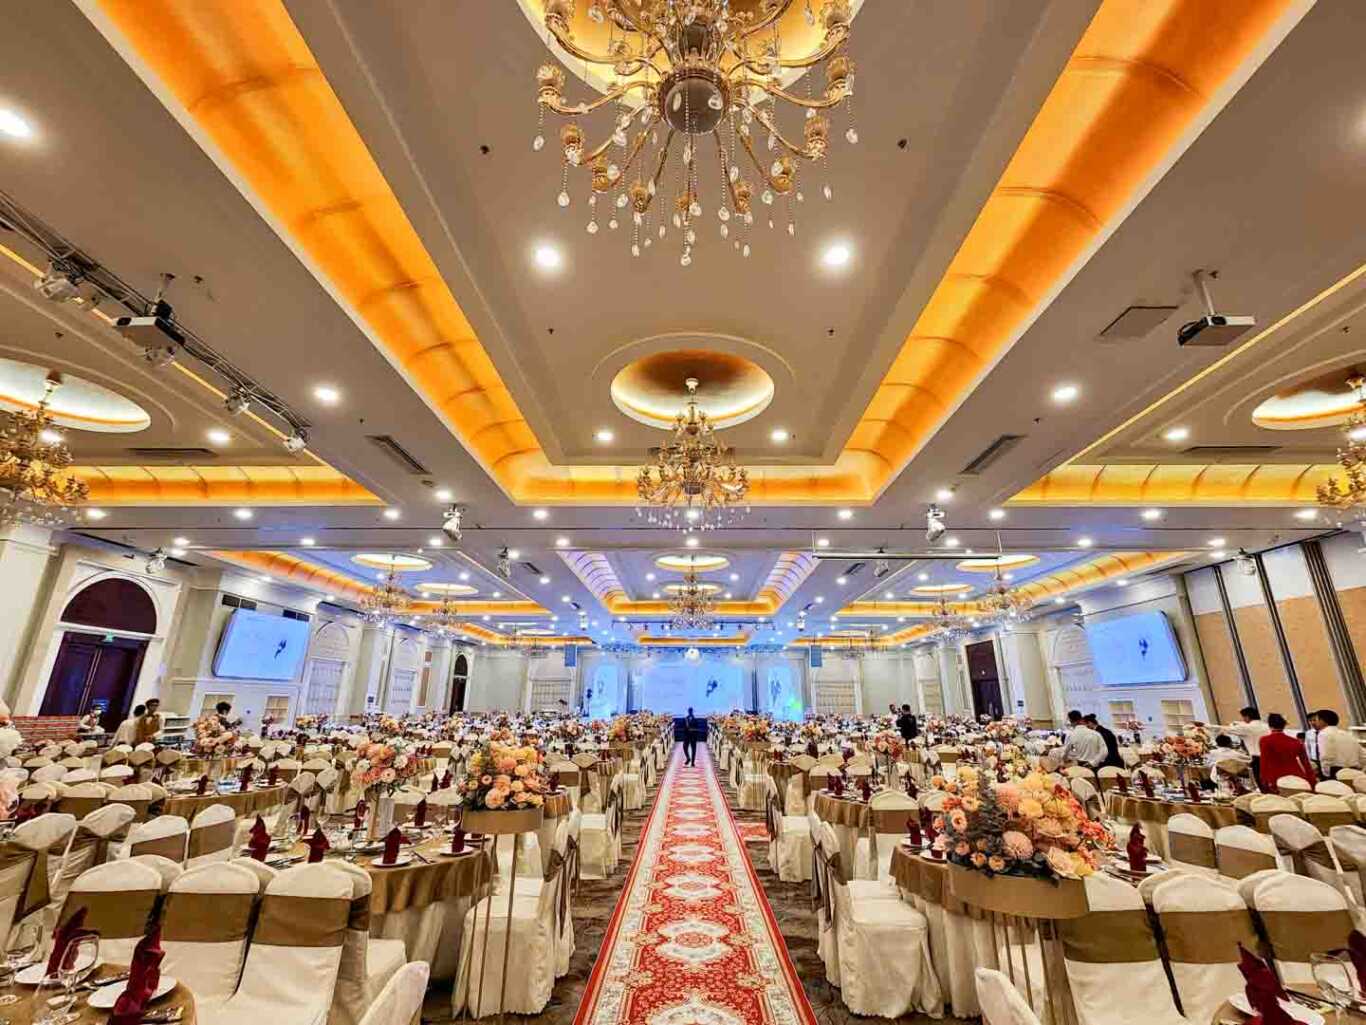 Eros palace là địa điểm hoàn hảo cho tiệc cưới như mơ tại Biên Hoà